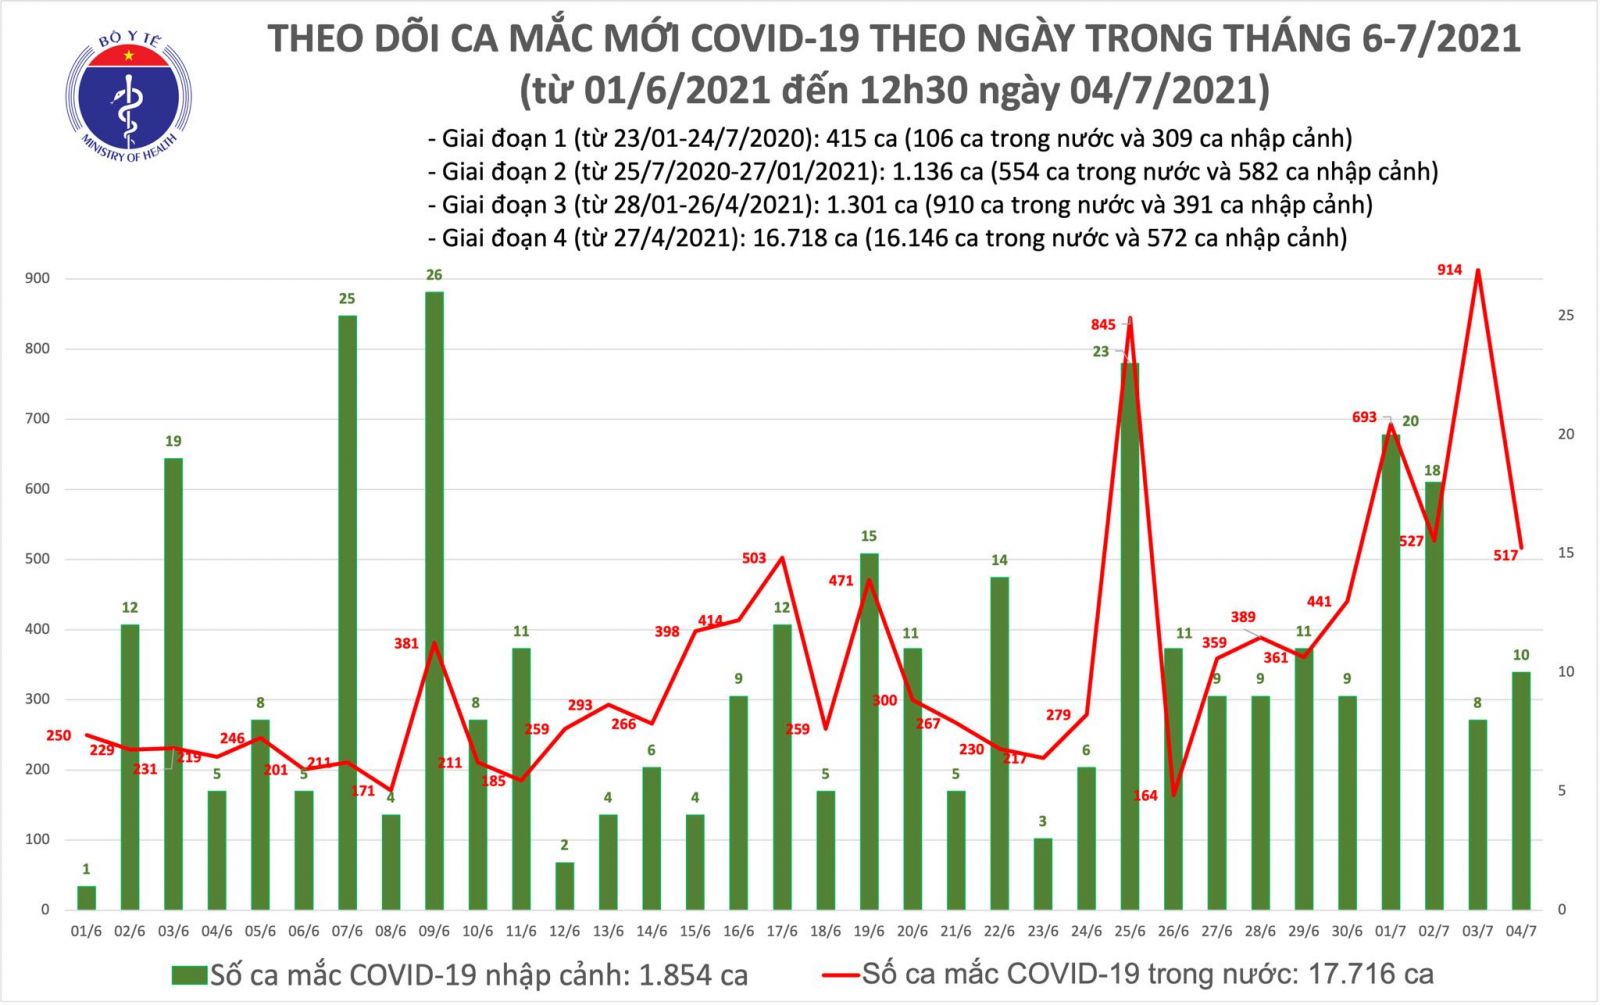 Trưa 4/7: Có 260 ca mắc COVID-19, riêng TP Hồ Chí Minh đã 213 ca